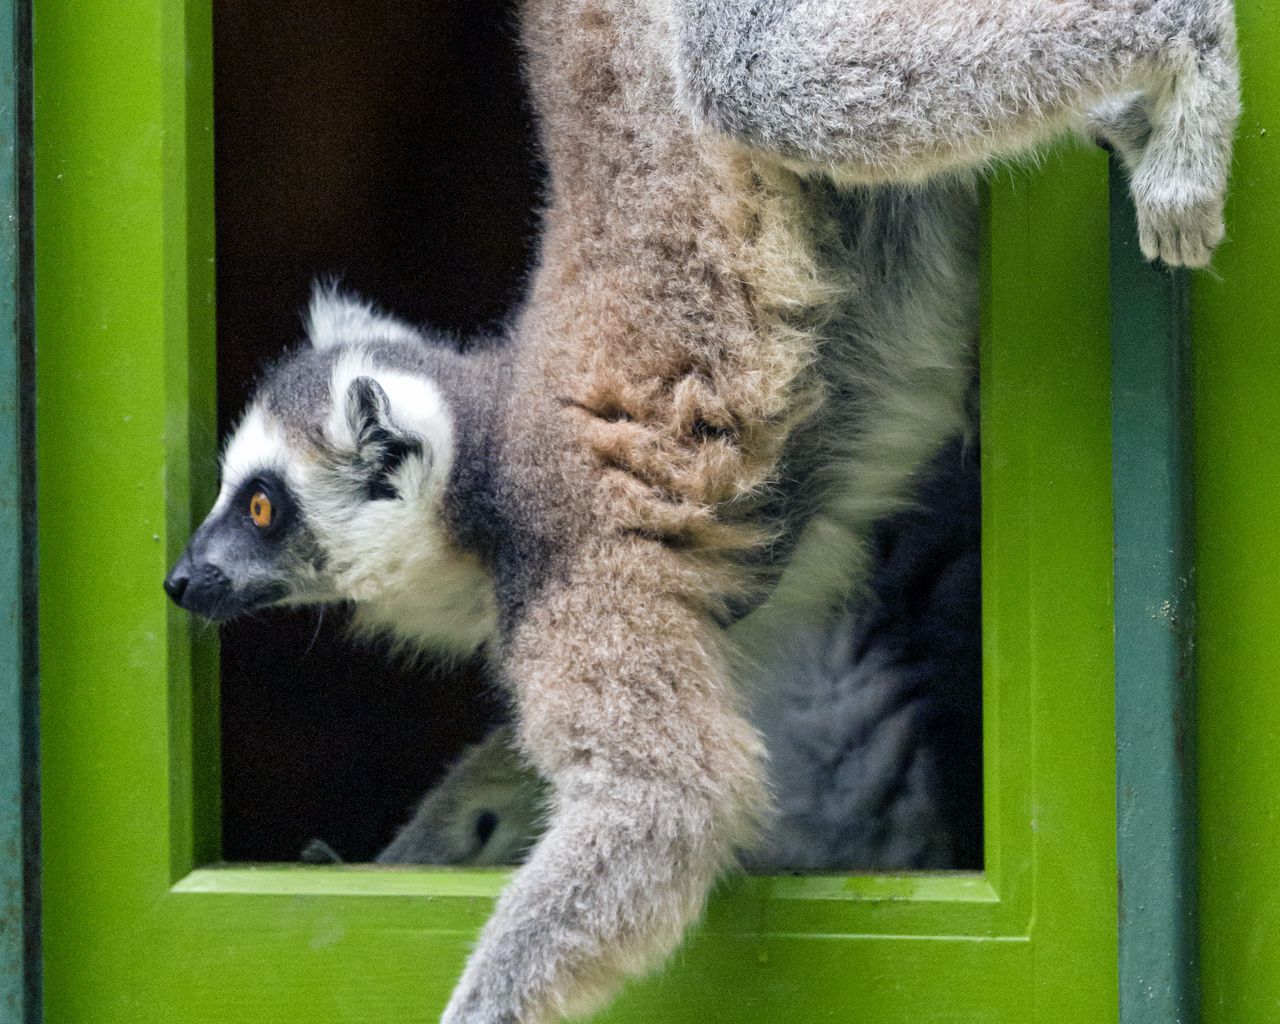 Download wallpaper 1280x1024 lemur, door, funny, animal standard 5:4 hd  background